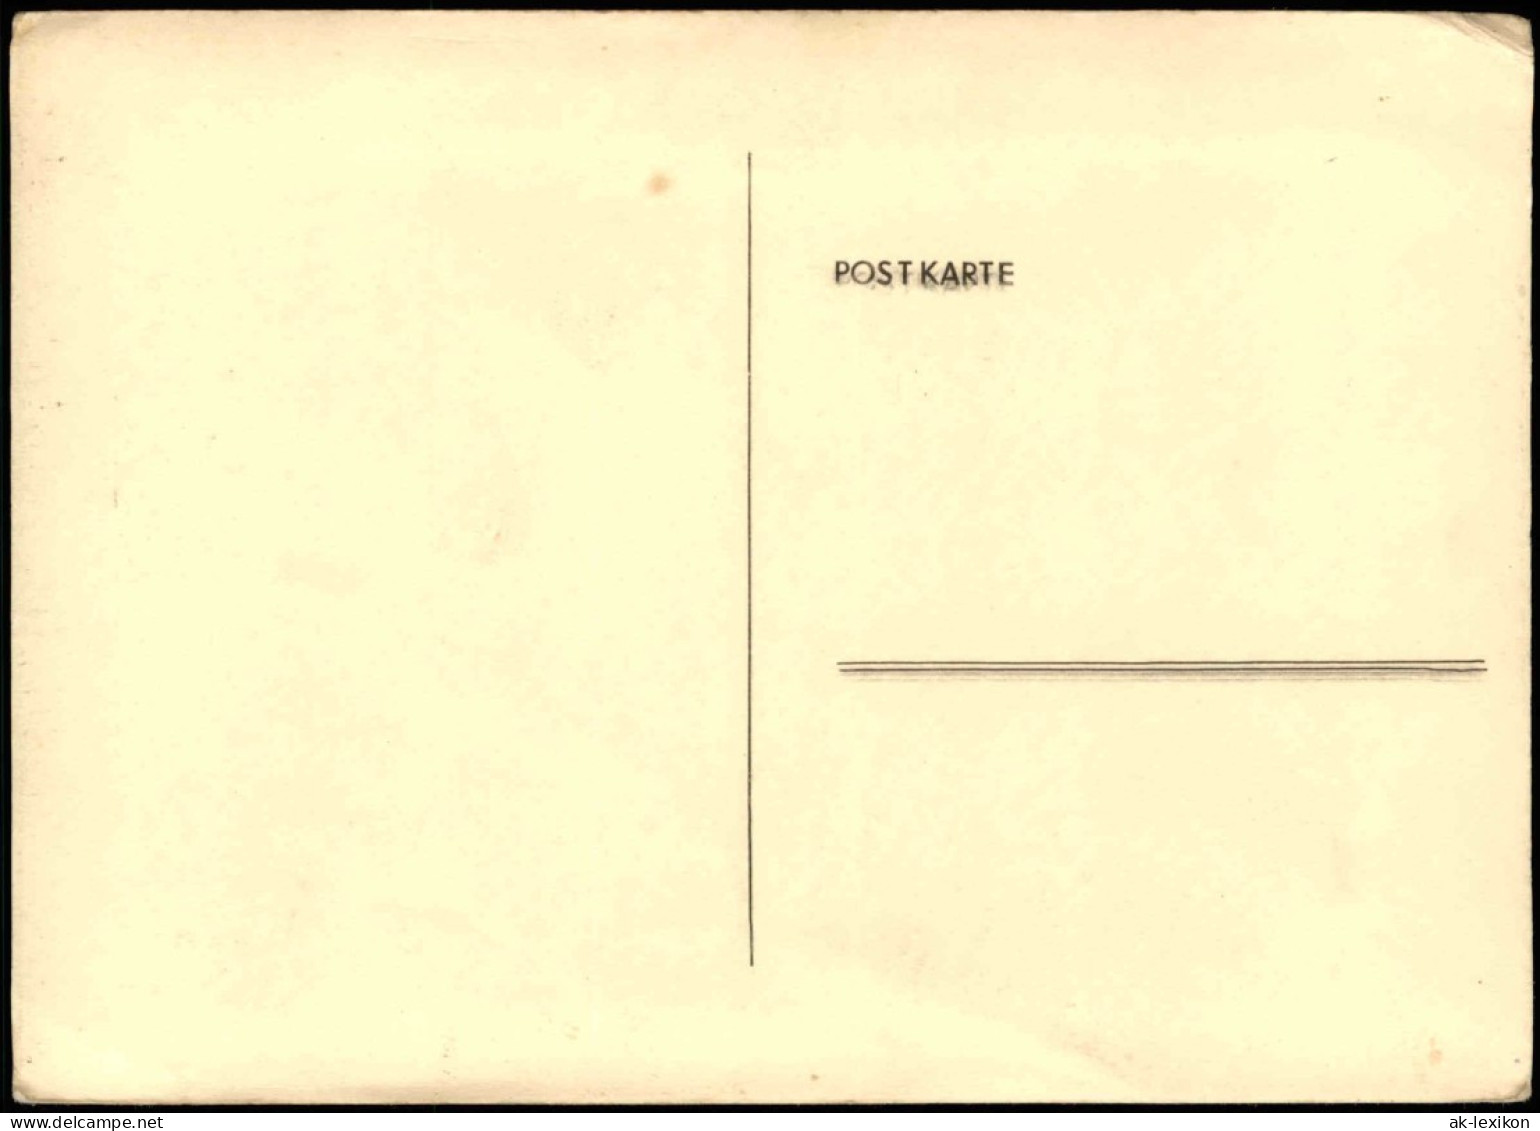 Ansichtskarte  Aussichtsturm Mit Restauration Federzeichnung 1930 - A Identificar